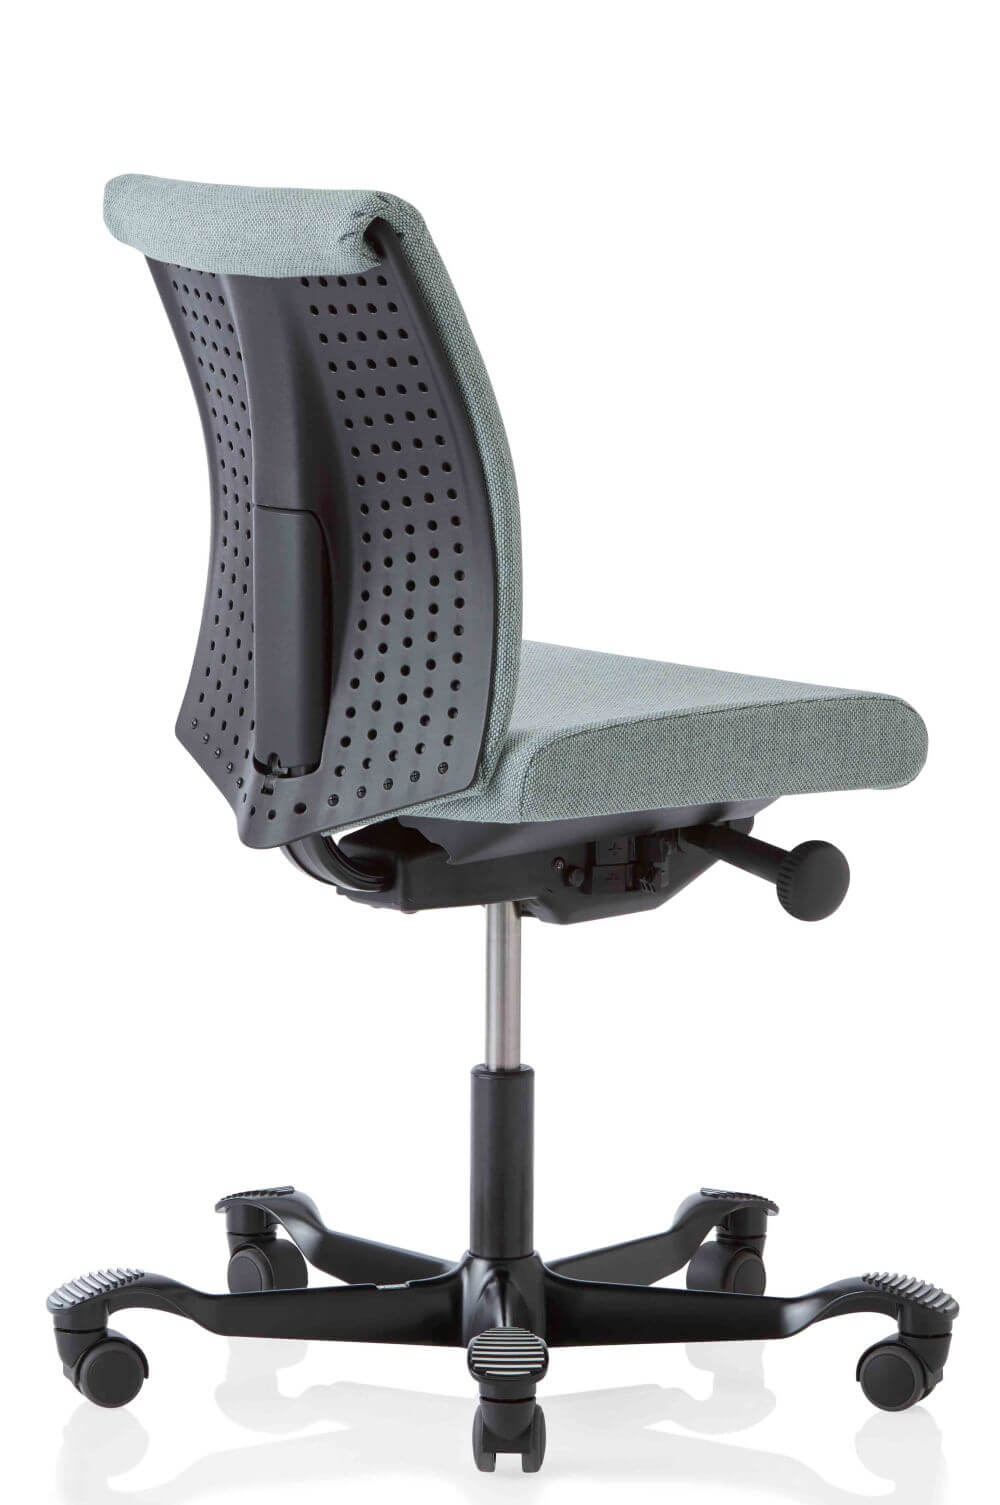 HAG Creed 6003 Bürostuhl mit halbhoher Lehne und Kunststoffabdeckung an der Rückenlehne